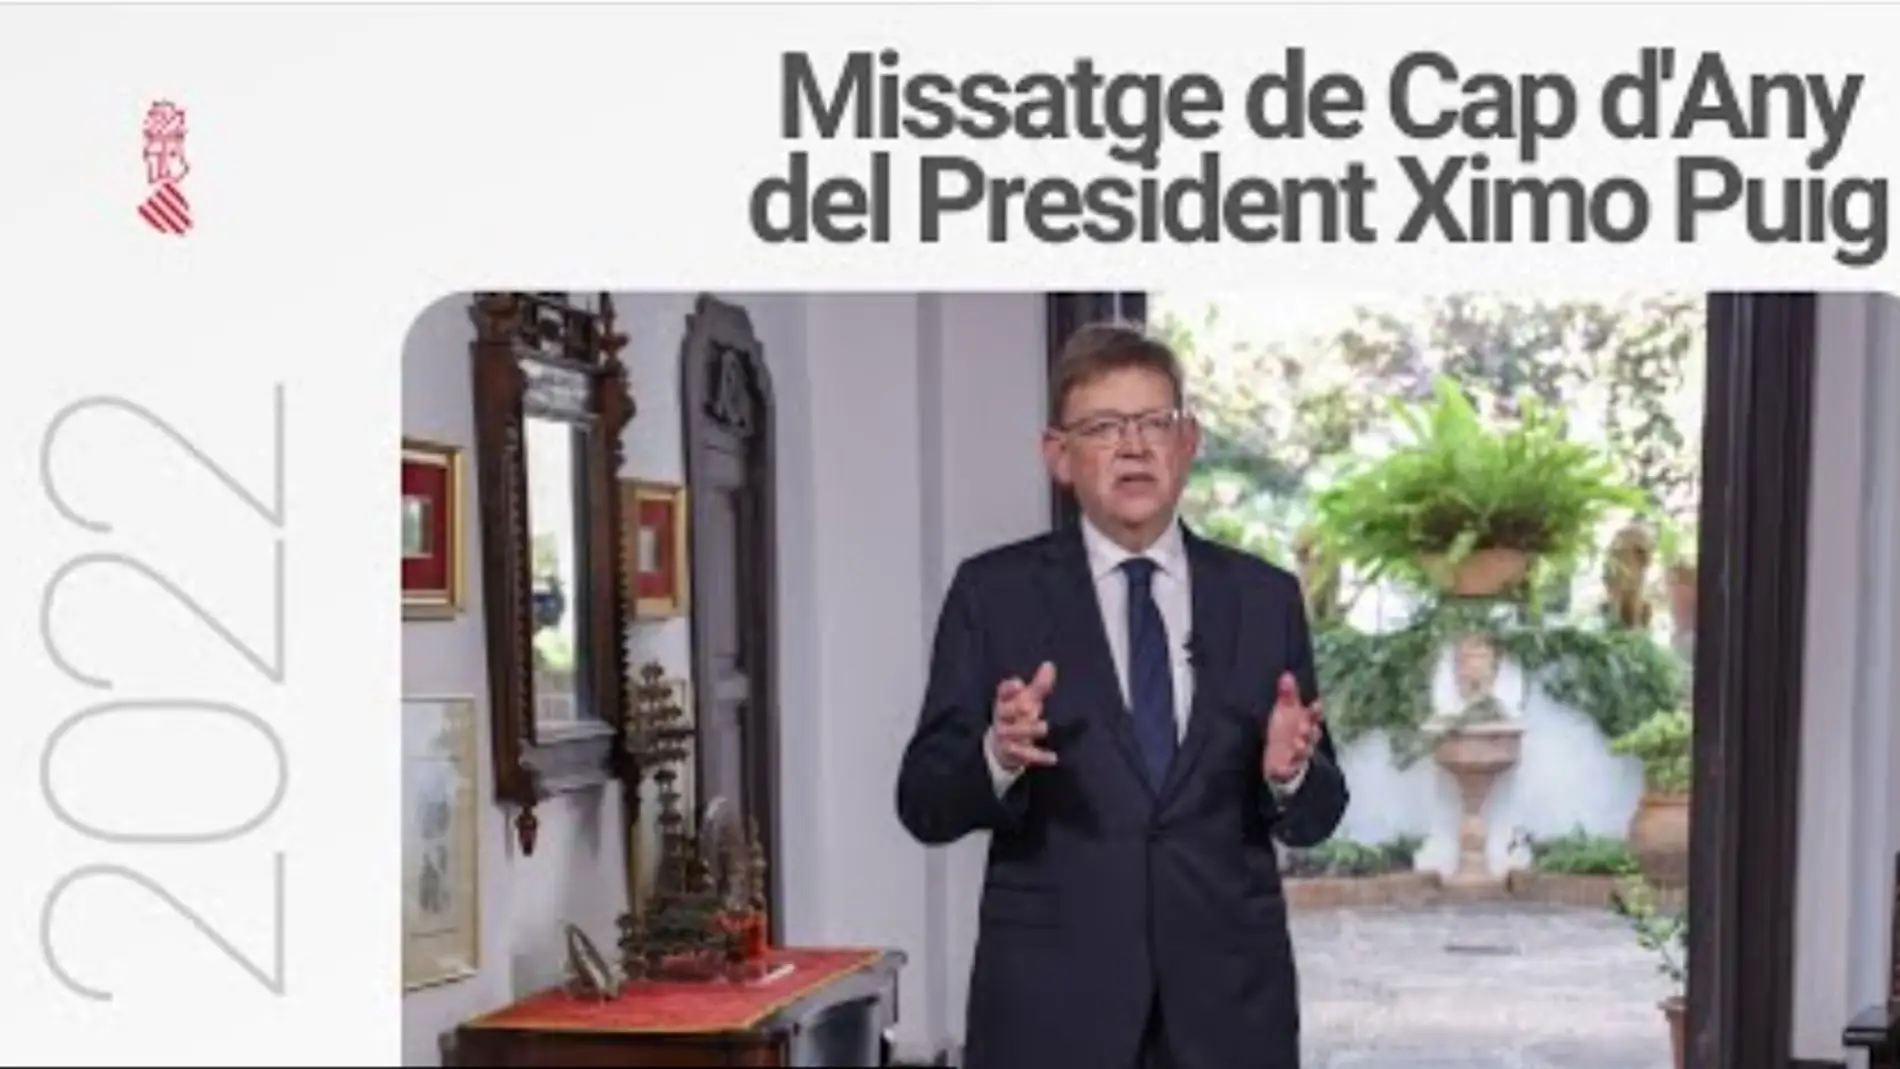 Mensaje de Fin de Año del president Ximo Puig